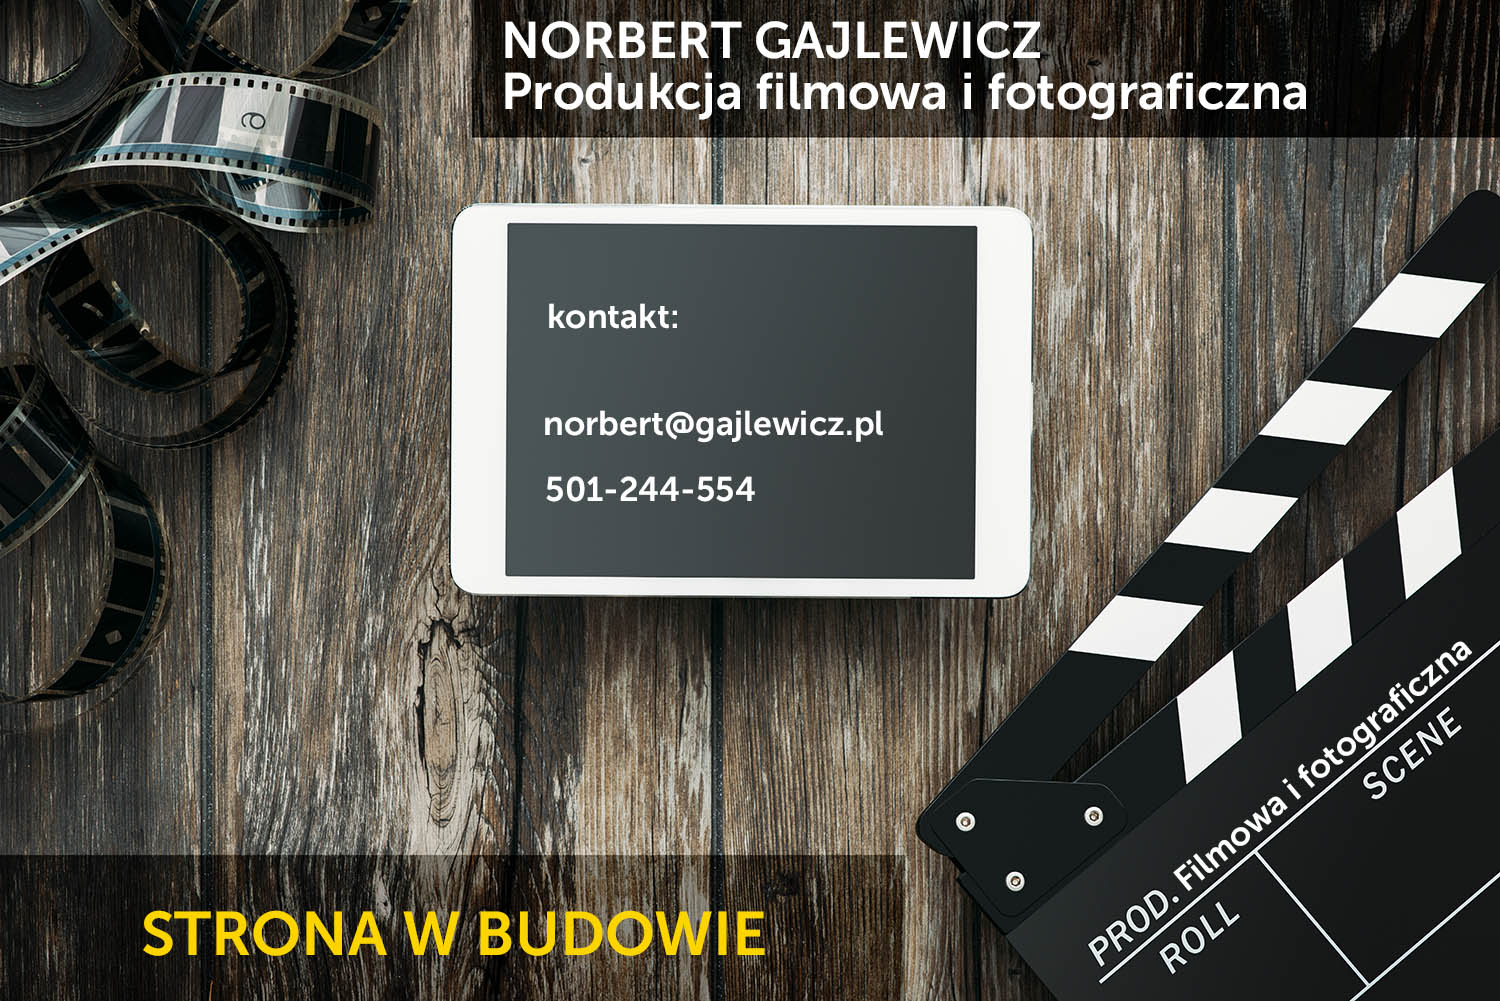 NORBERT GAJLEWICZ

Produkcja filmowa i fotograficzna

STRONA  W BUDOWIE